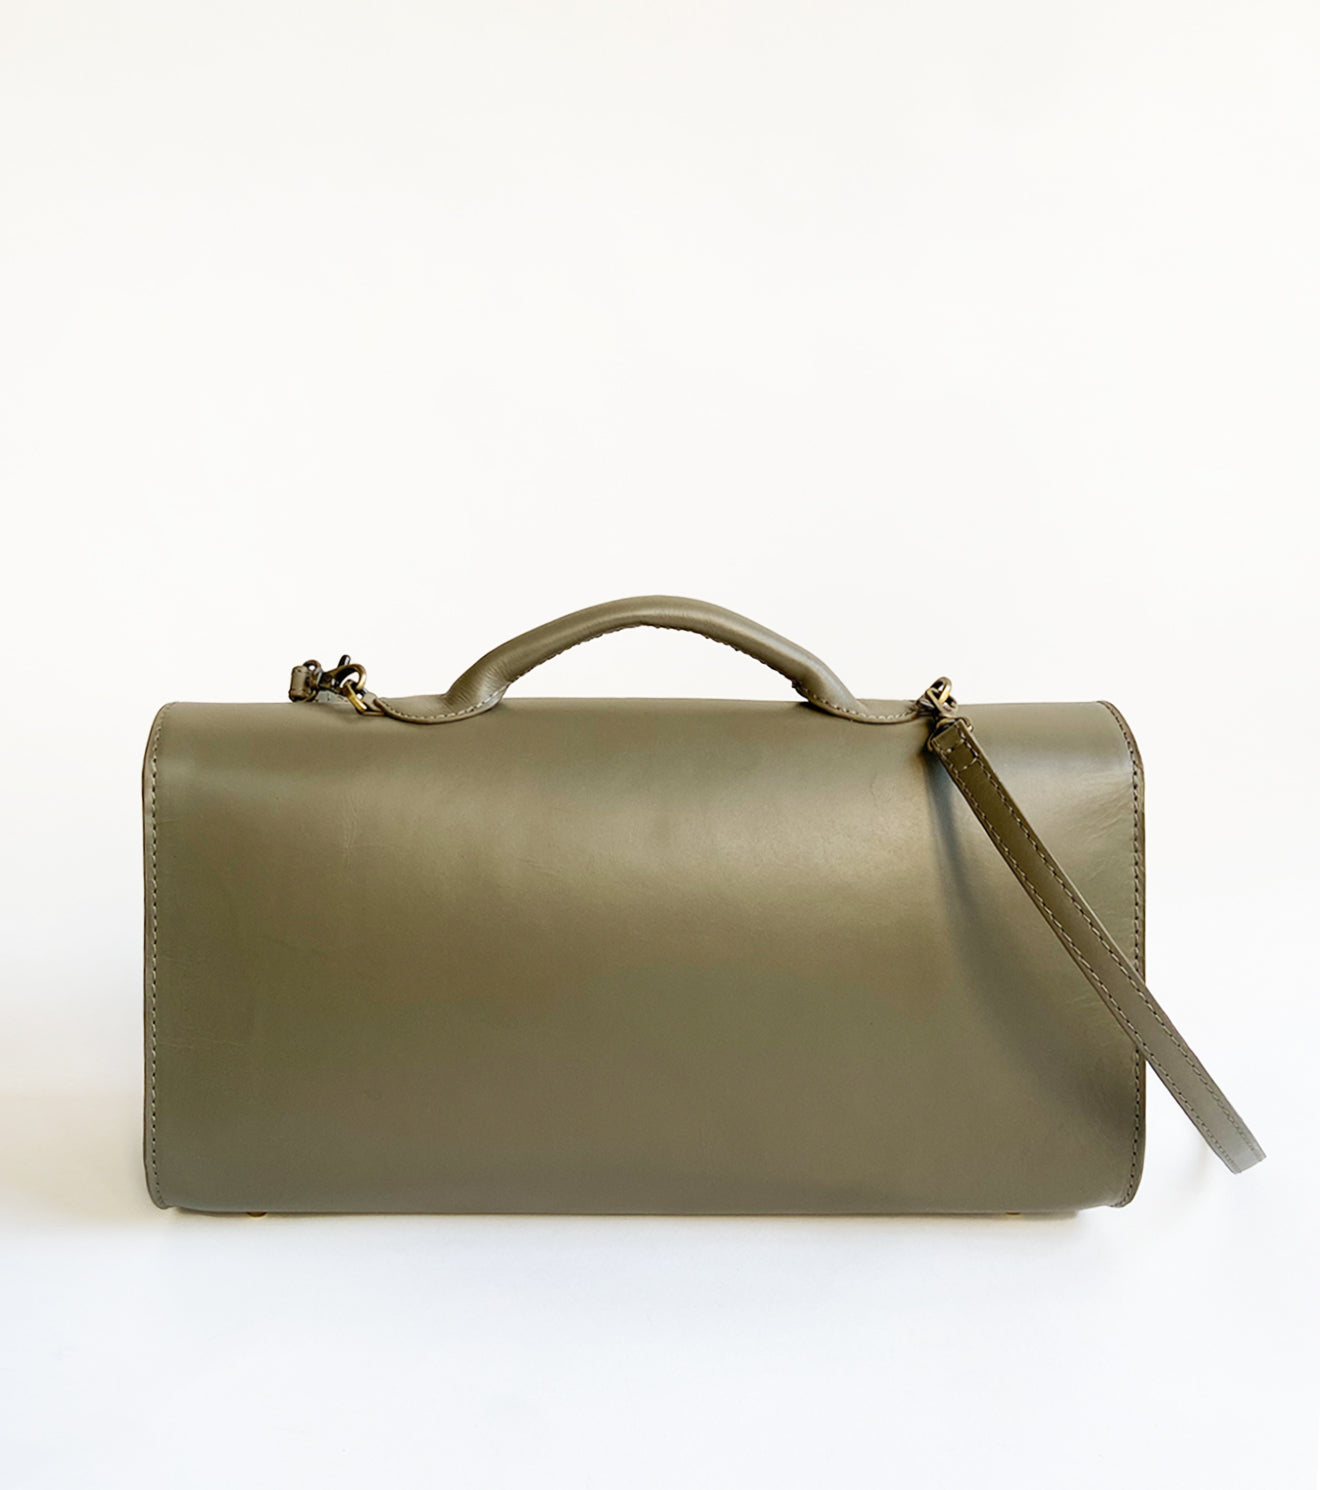 Olive messenger bag